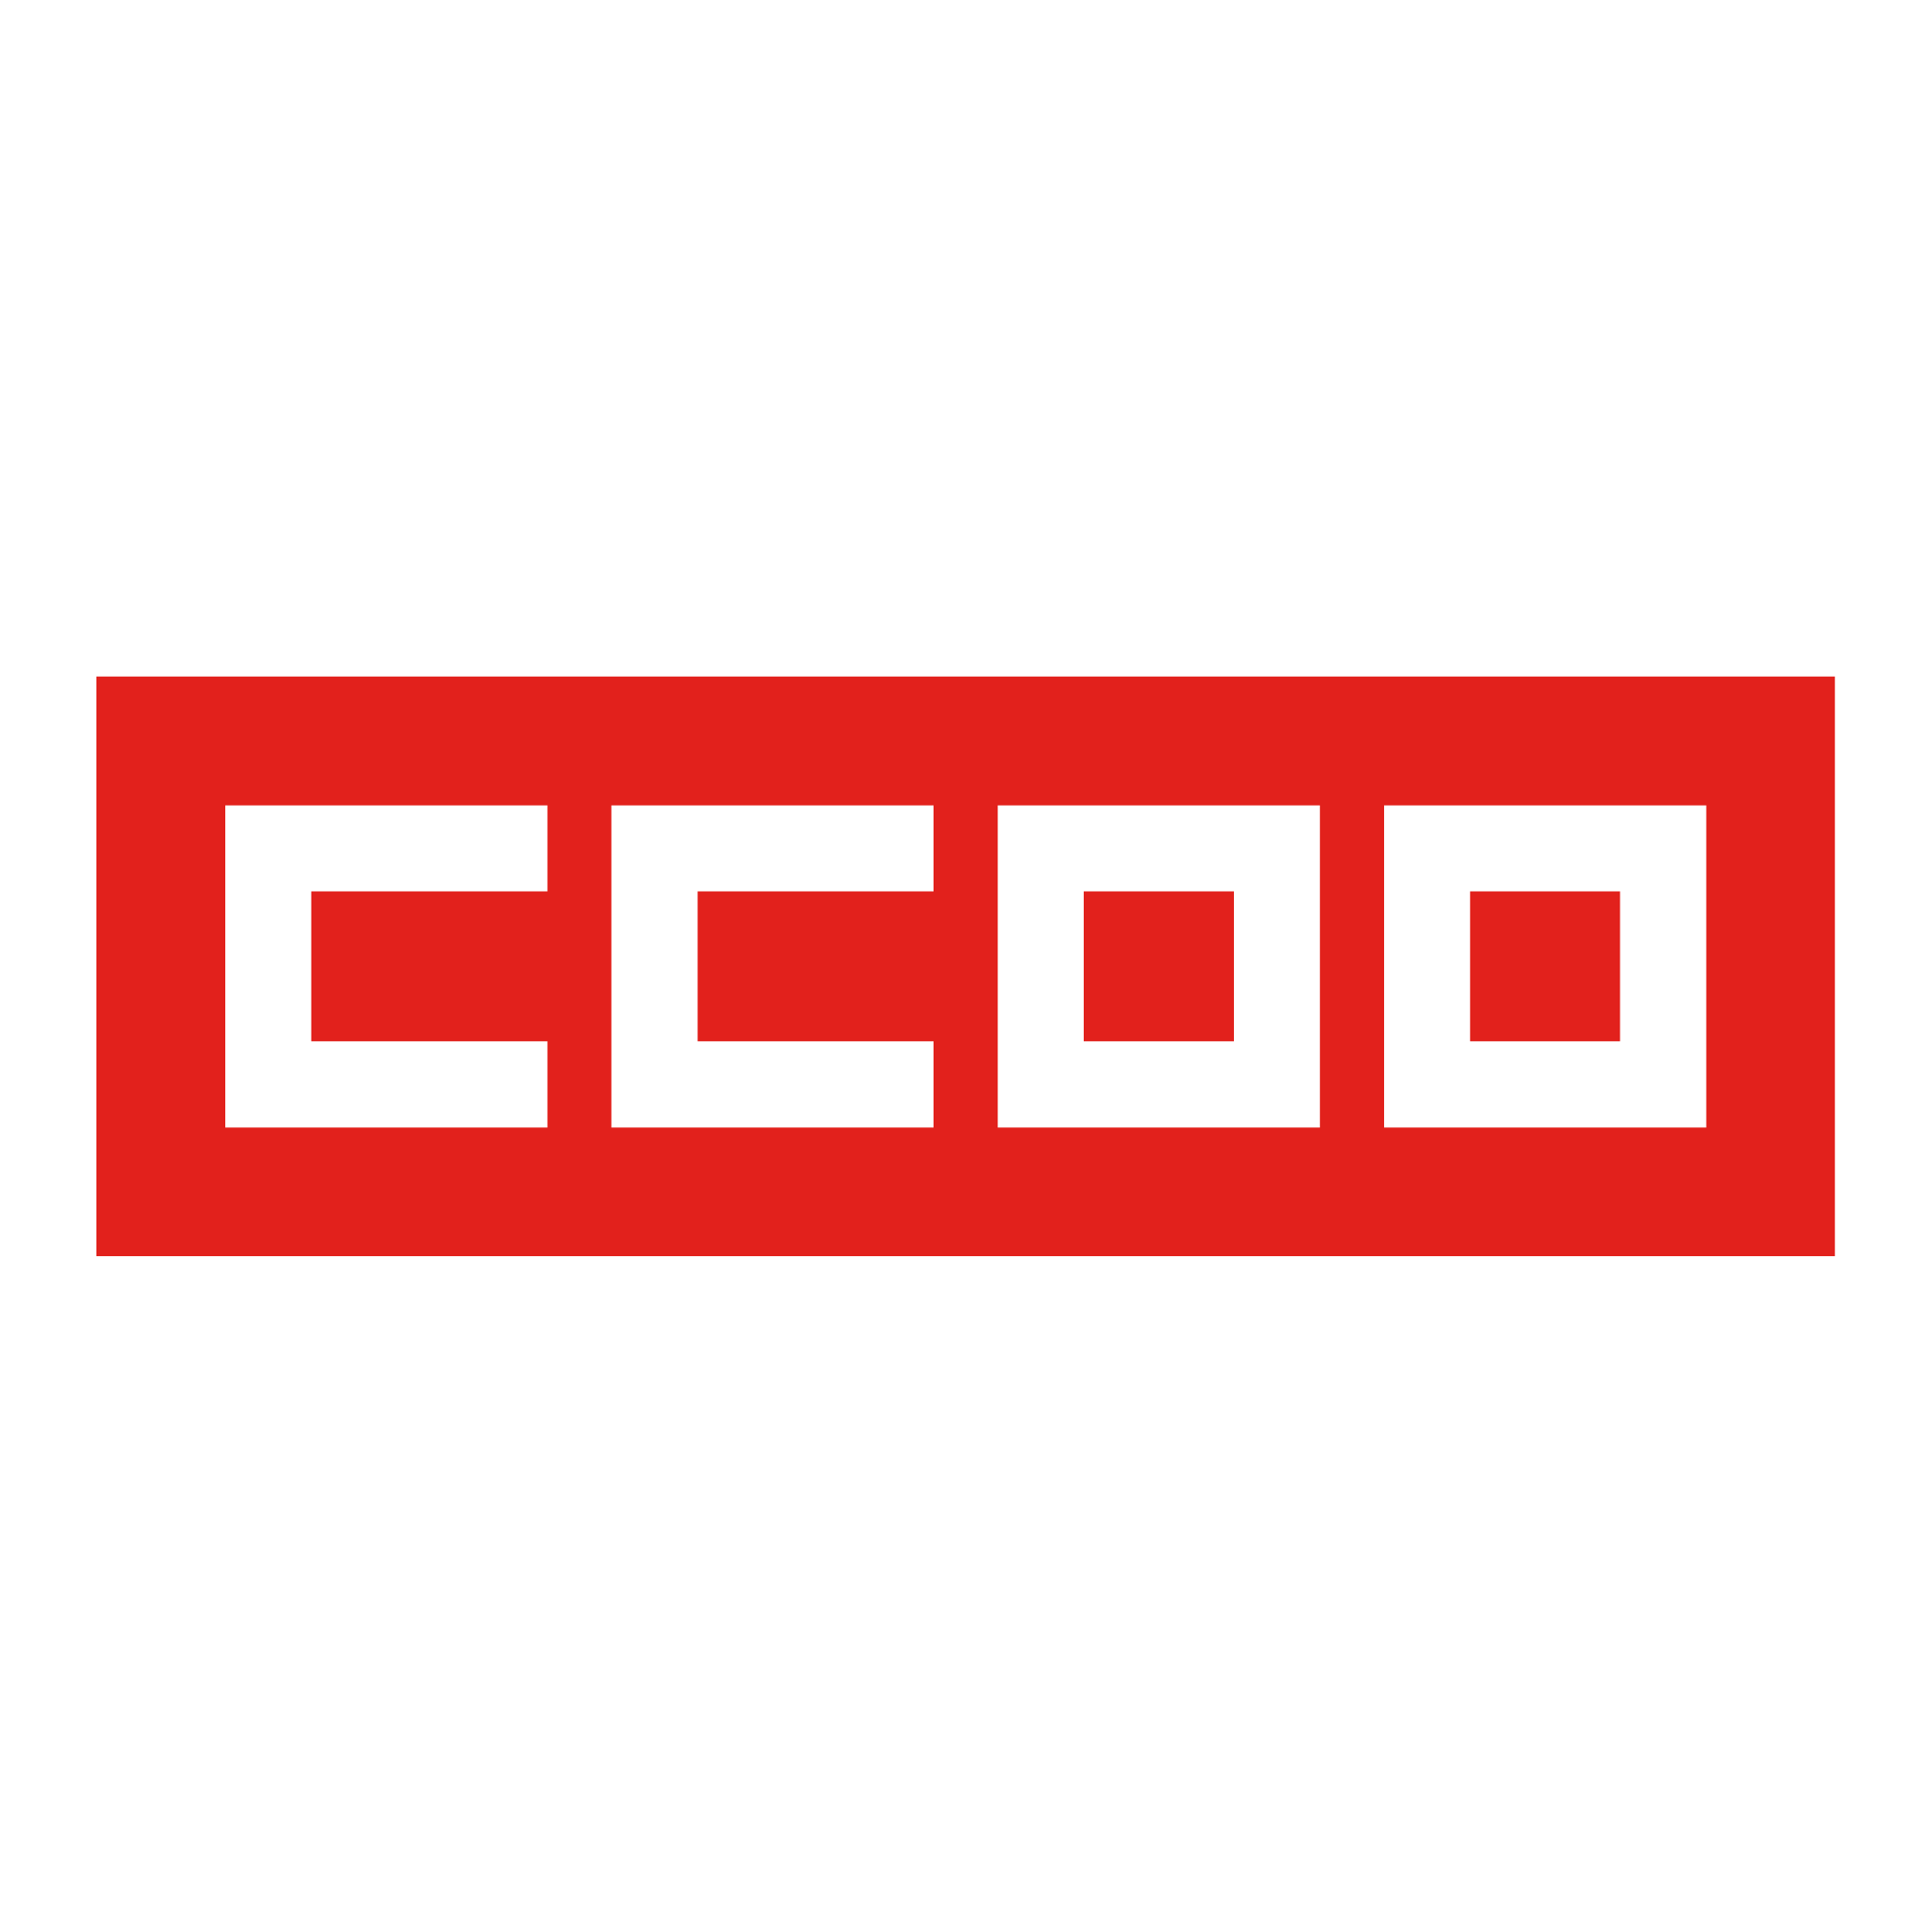 CCOO identidad